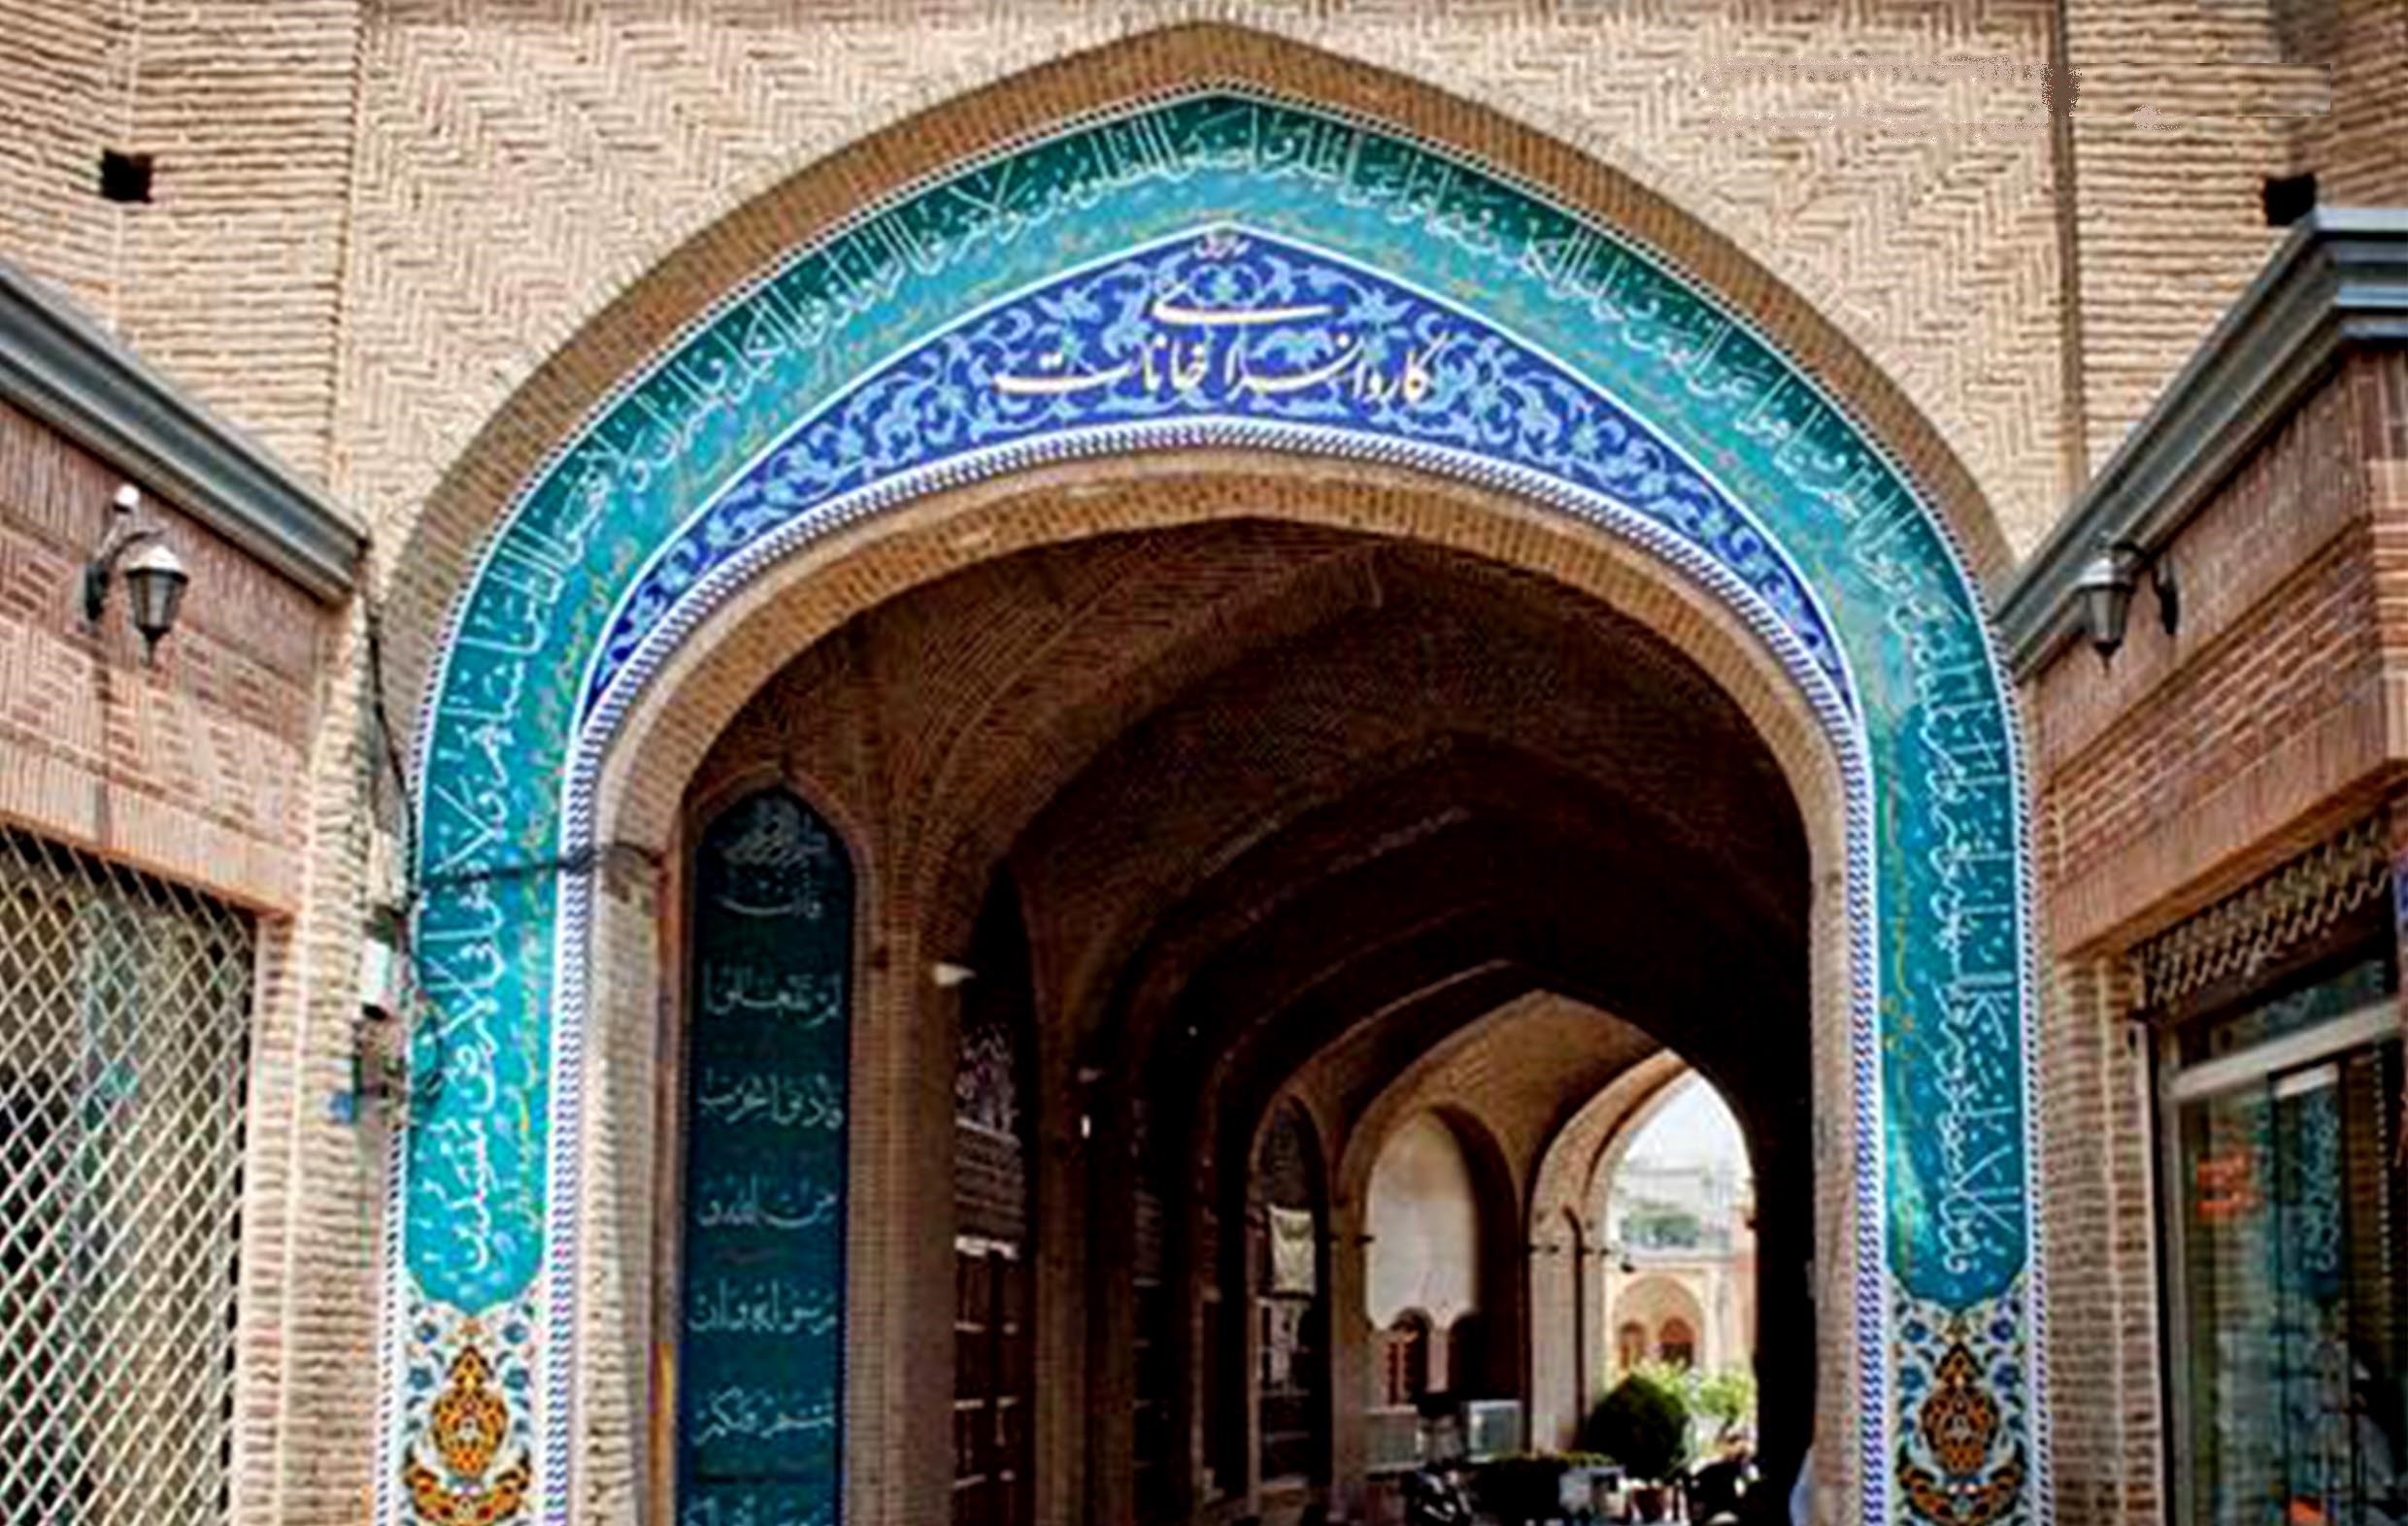 کاروانسرای خانات1 کاروانسرای خانات یادگاری از تهران قدیم